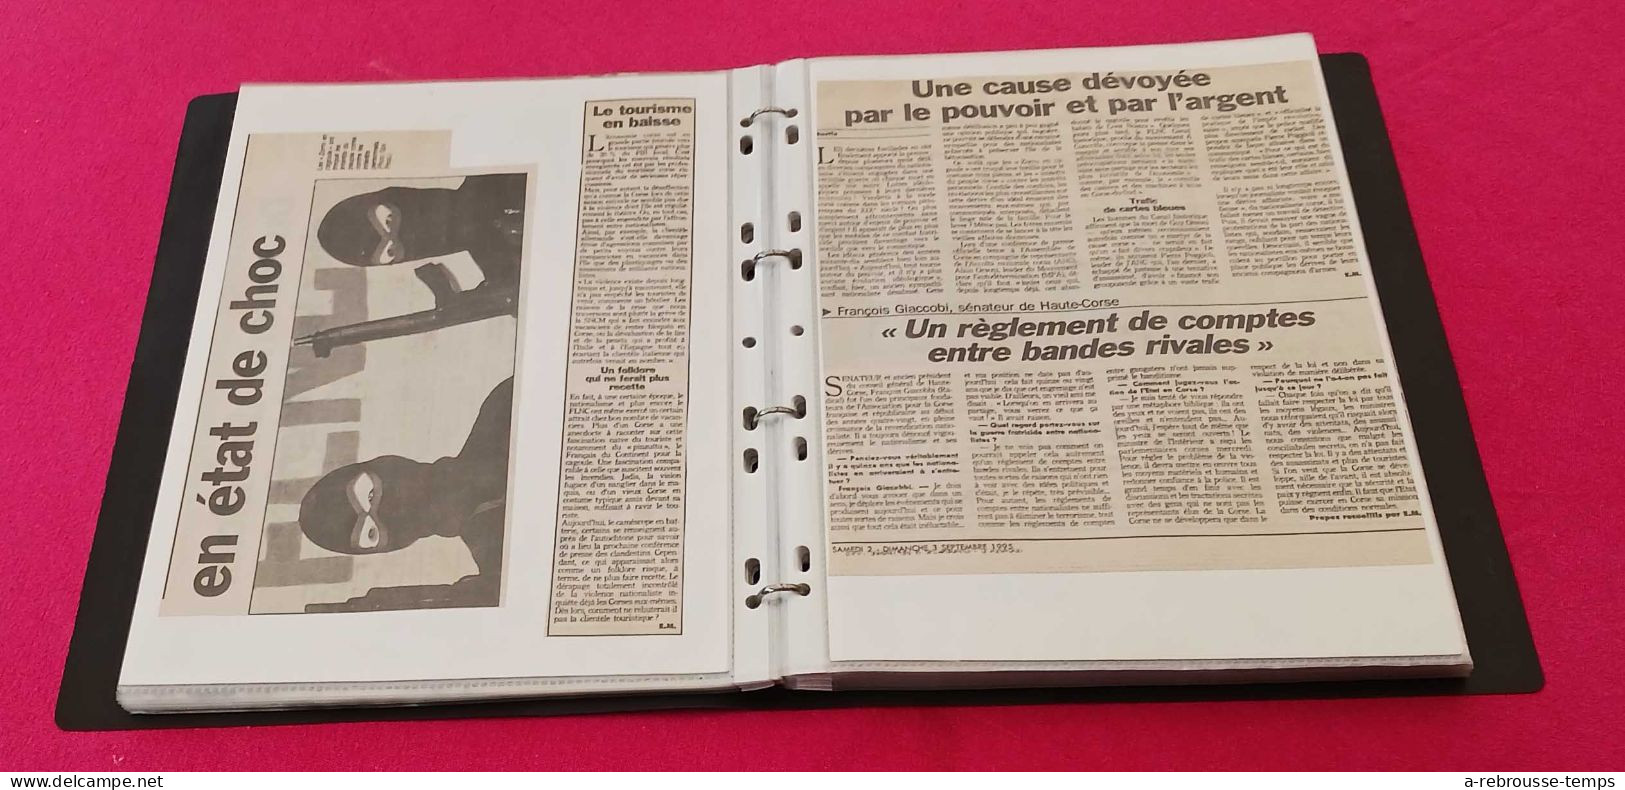 CORSE- FLNC Attentats Nationalisme Police-classeur de + de 80 articles de presse originaux -Années 1994-1995-1996-Tb